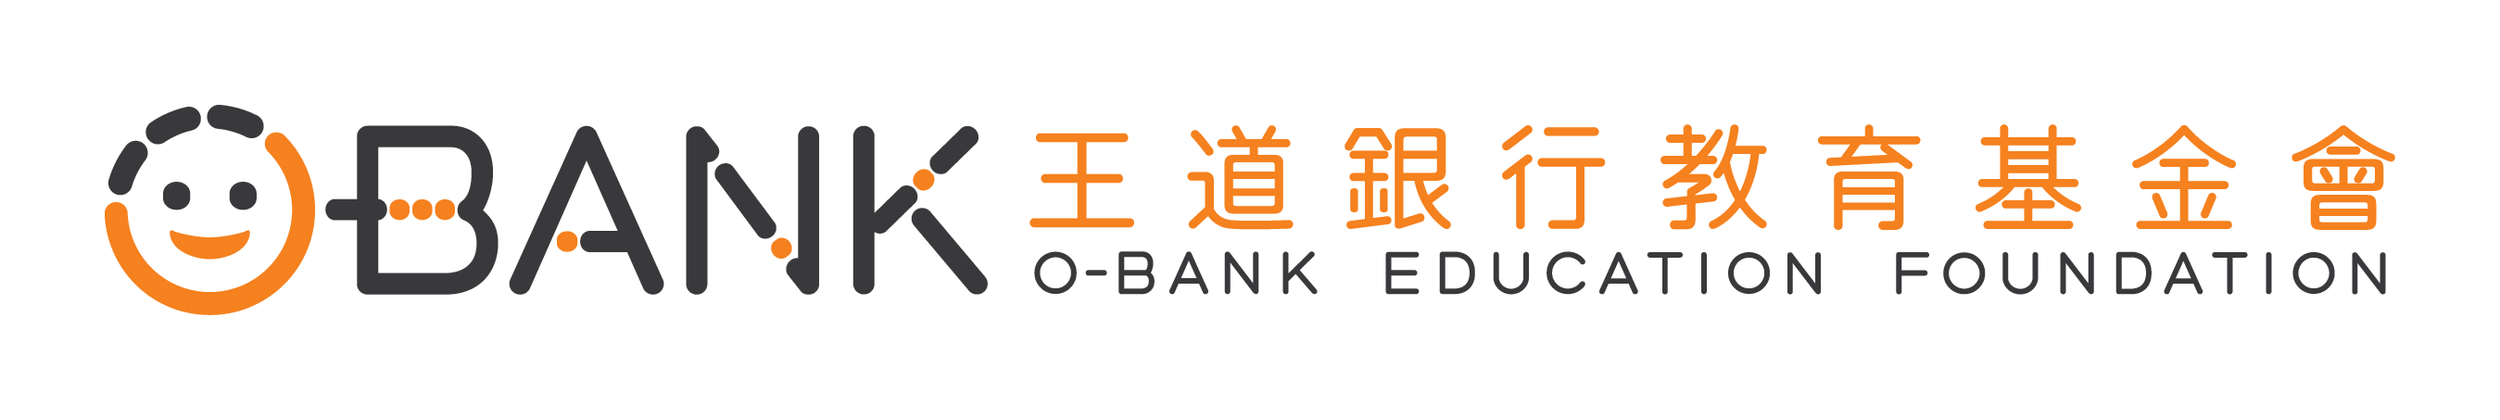 王道銀行教育基金會PNG.png